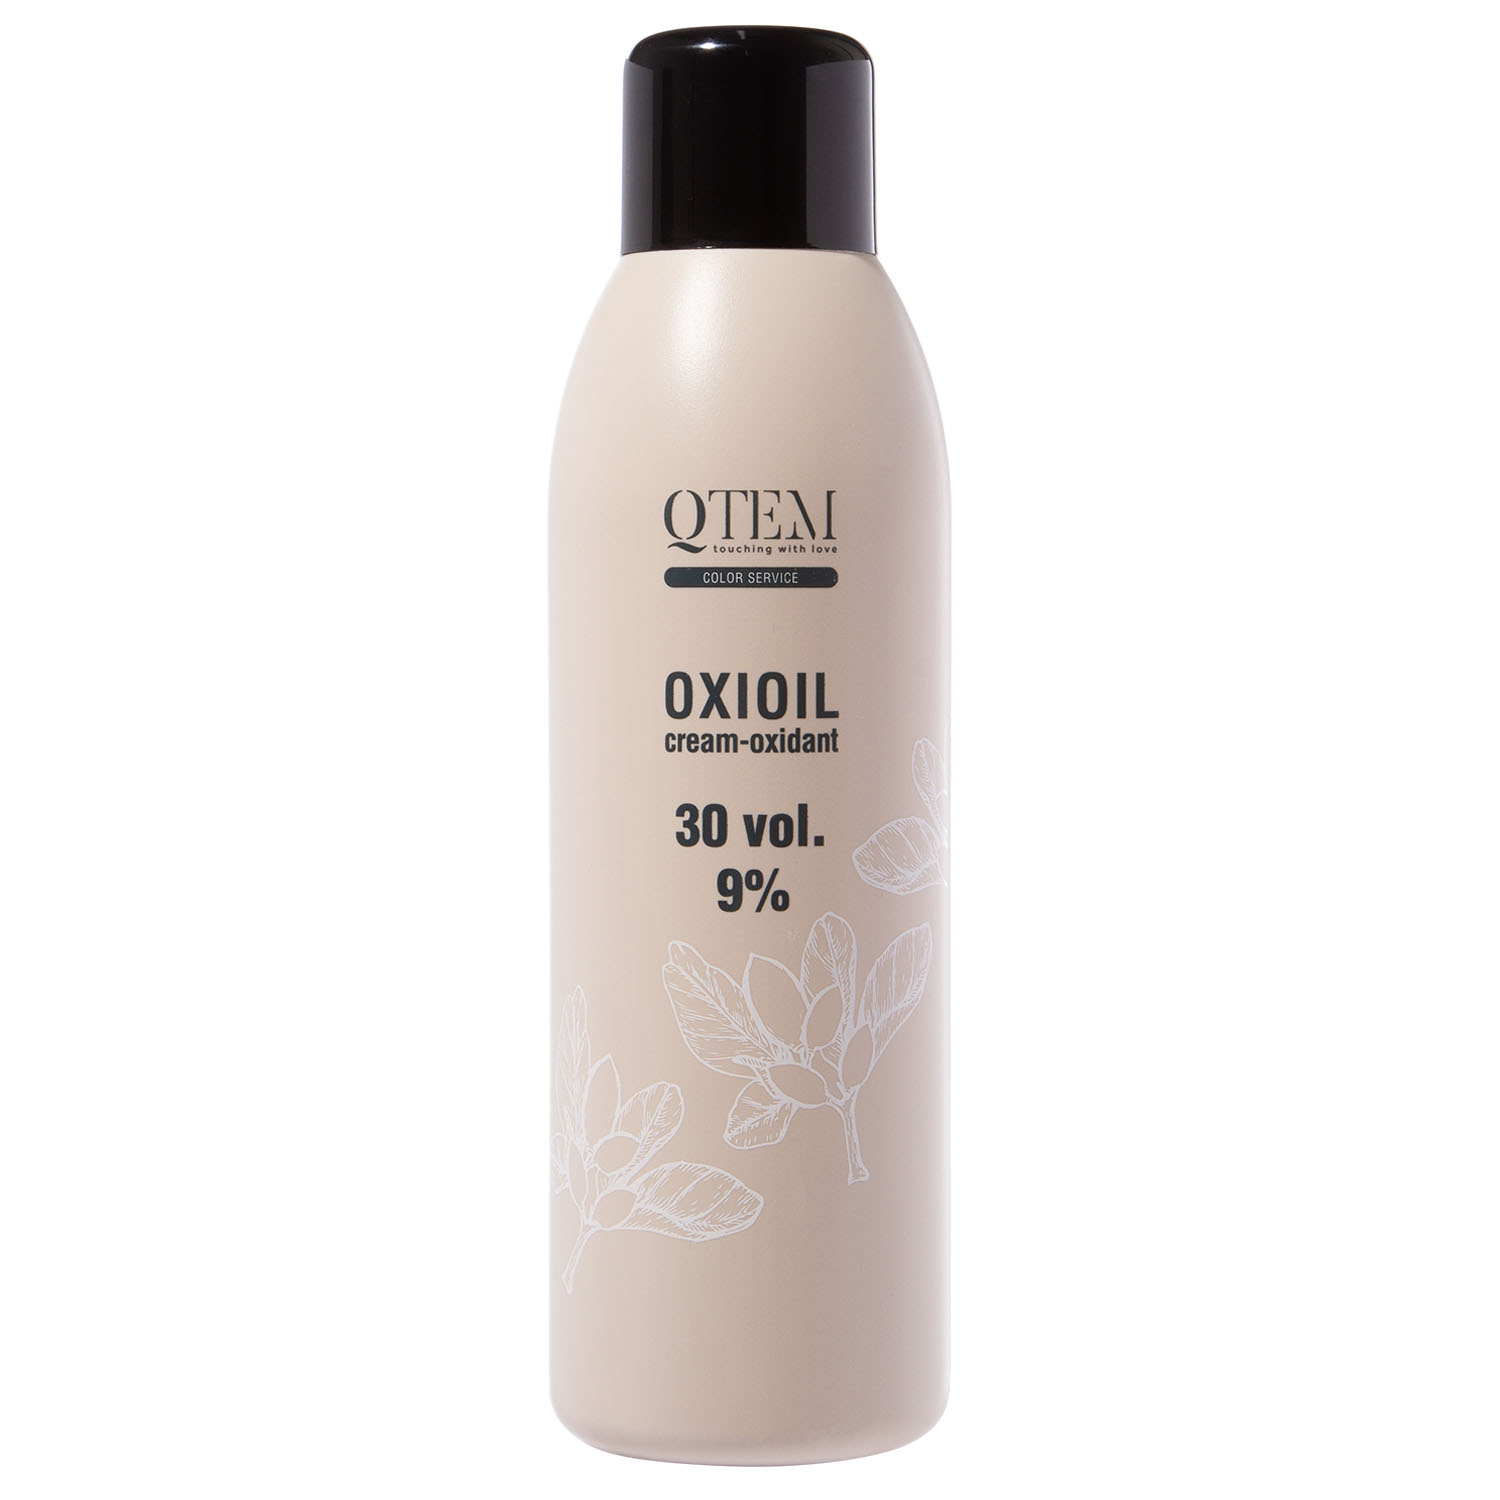 Qtem Универсальный крем-оксидант Oxioil 9% (30 Vol.), 1000 мл (Qtem, Color Service) проявление пленки